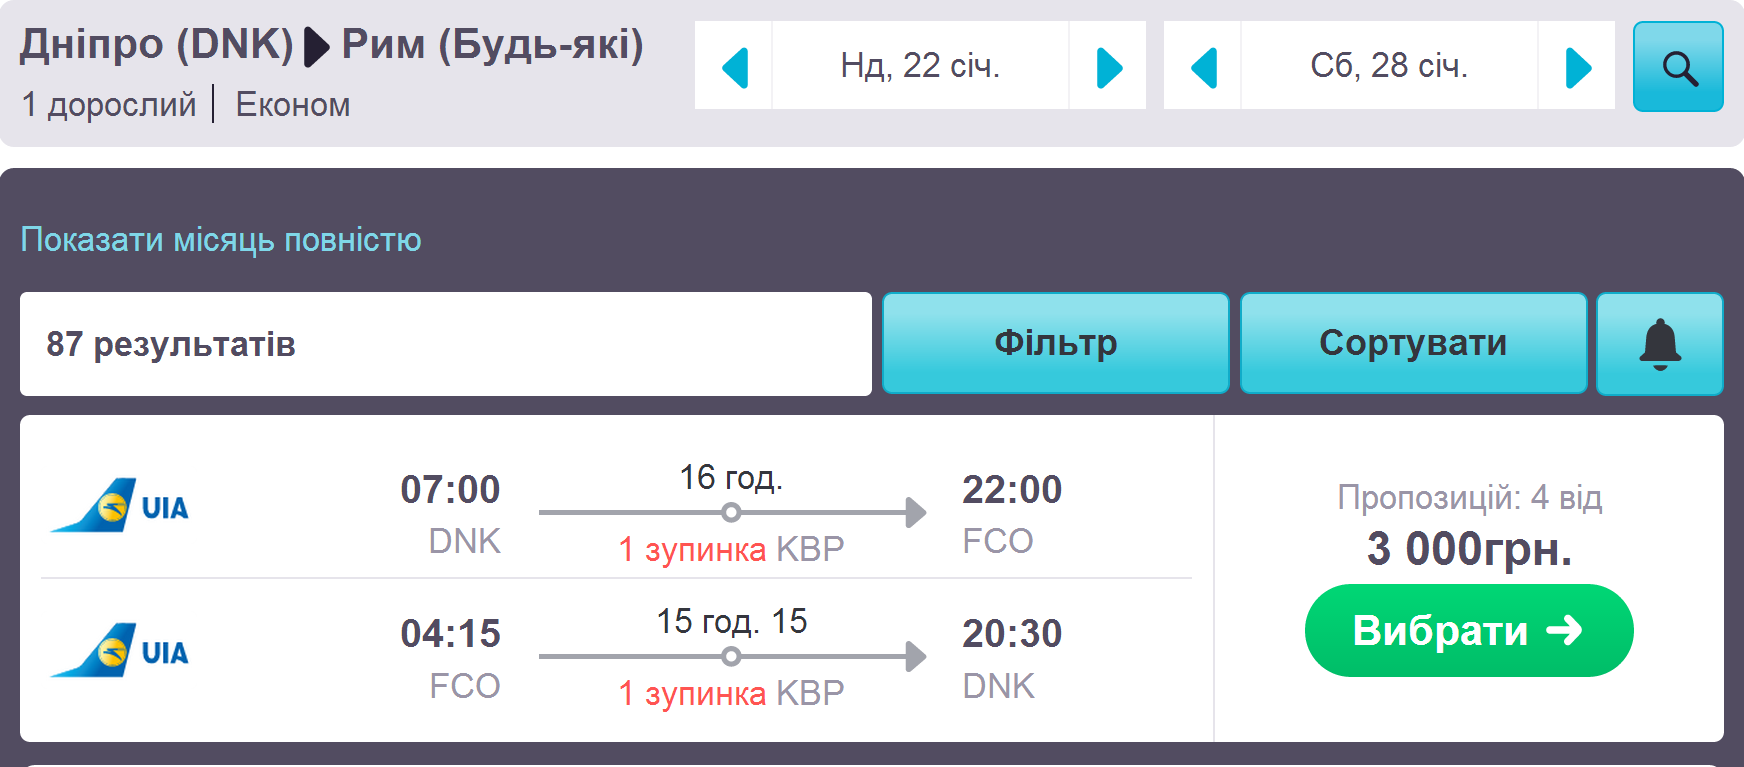 Авиабилеты красноярск катманду билеты в калининград расписание самолет